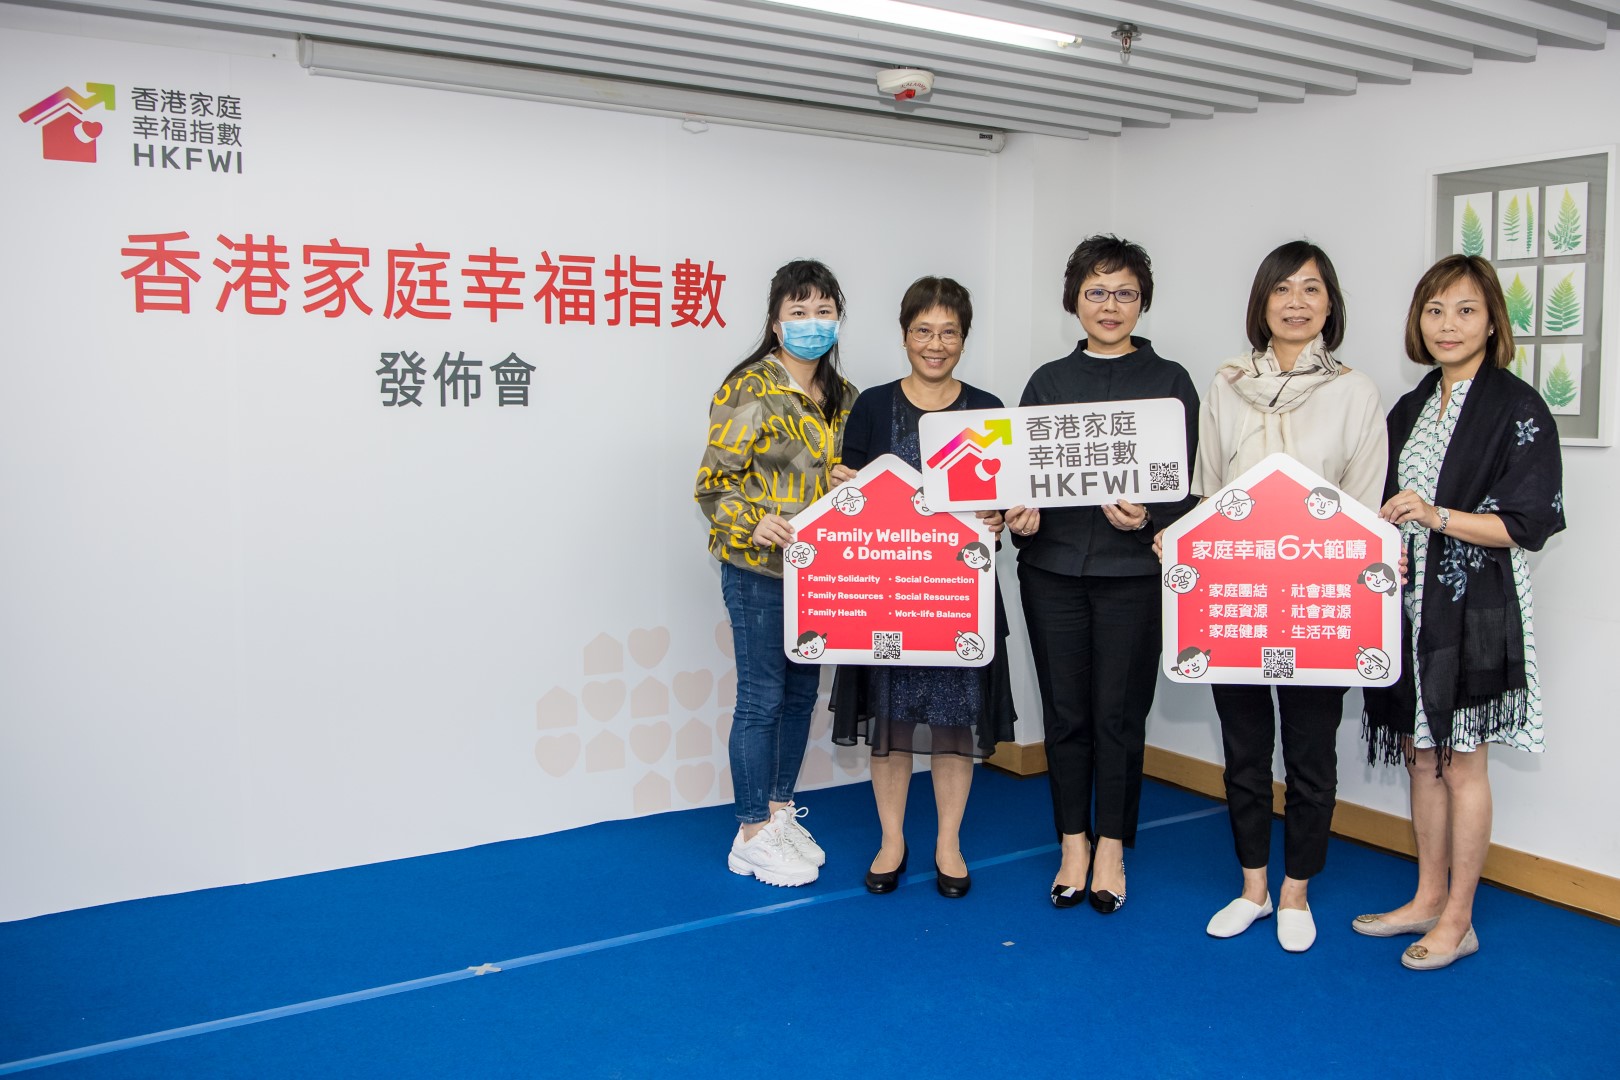 家福會公佈全港首個「香港家庭幸福指數」